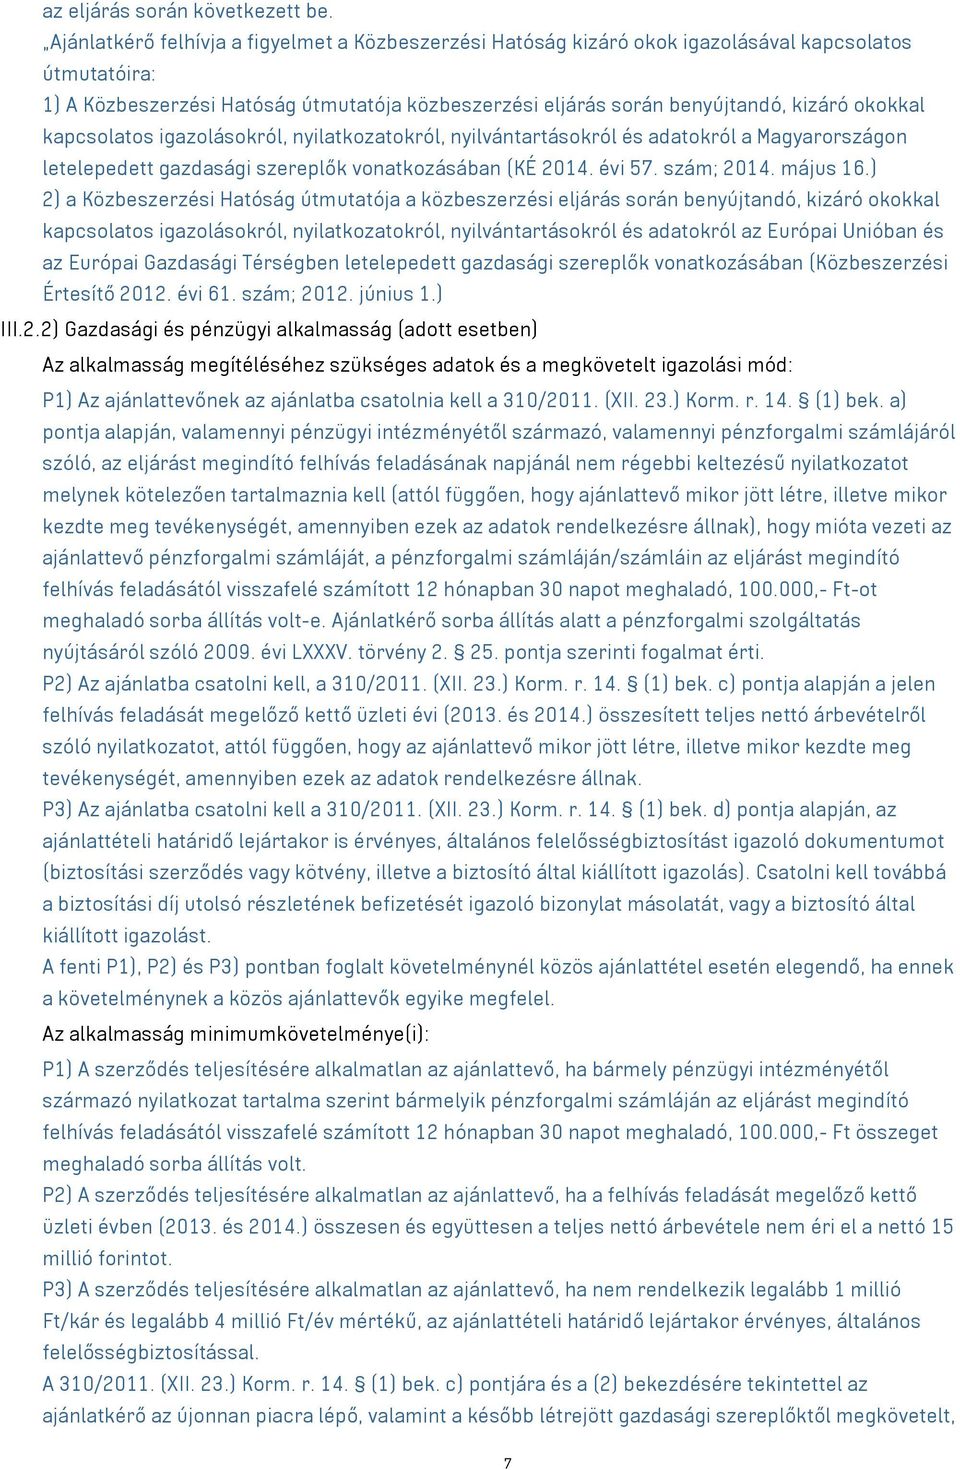 okokkal kapcsolatos igazolásokról, nyilatkozatokról, nyilvántartásokról és adatokról a Magyarországon letelepedett gazdasági szereplők vonatkozásában (KÉ 2014. évi 57. szám; 2014. május 16.